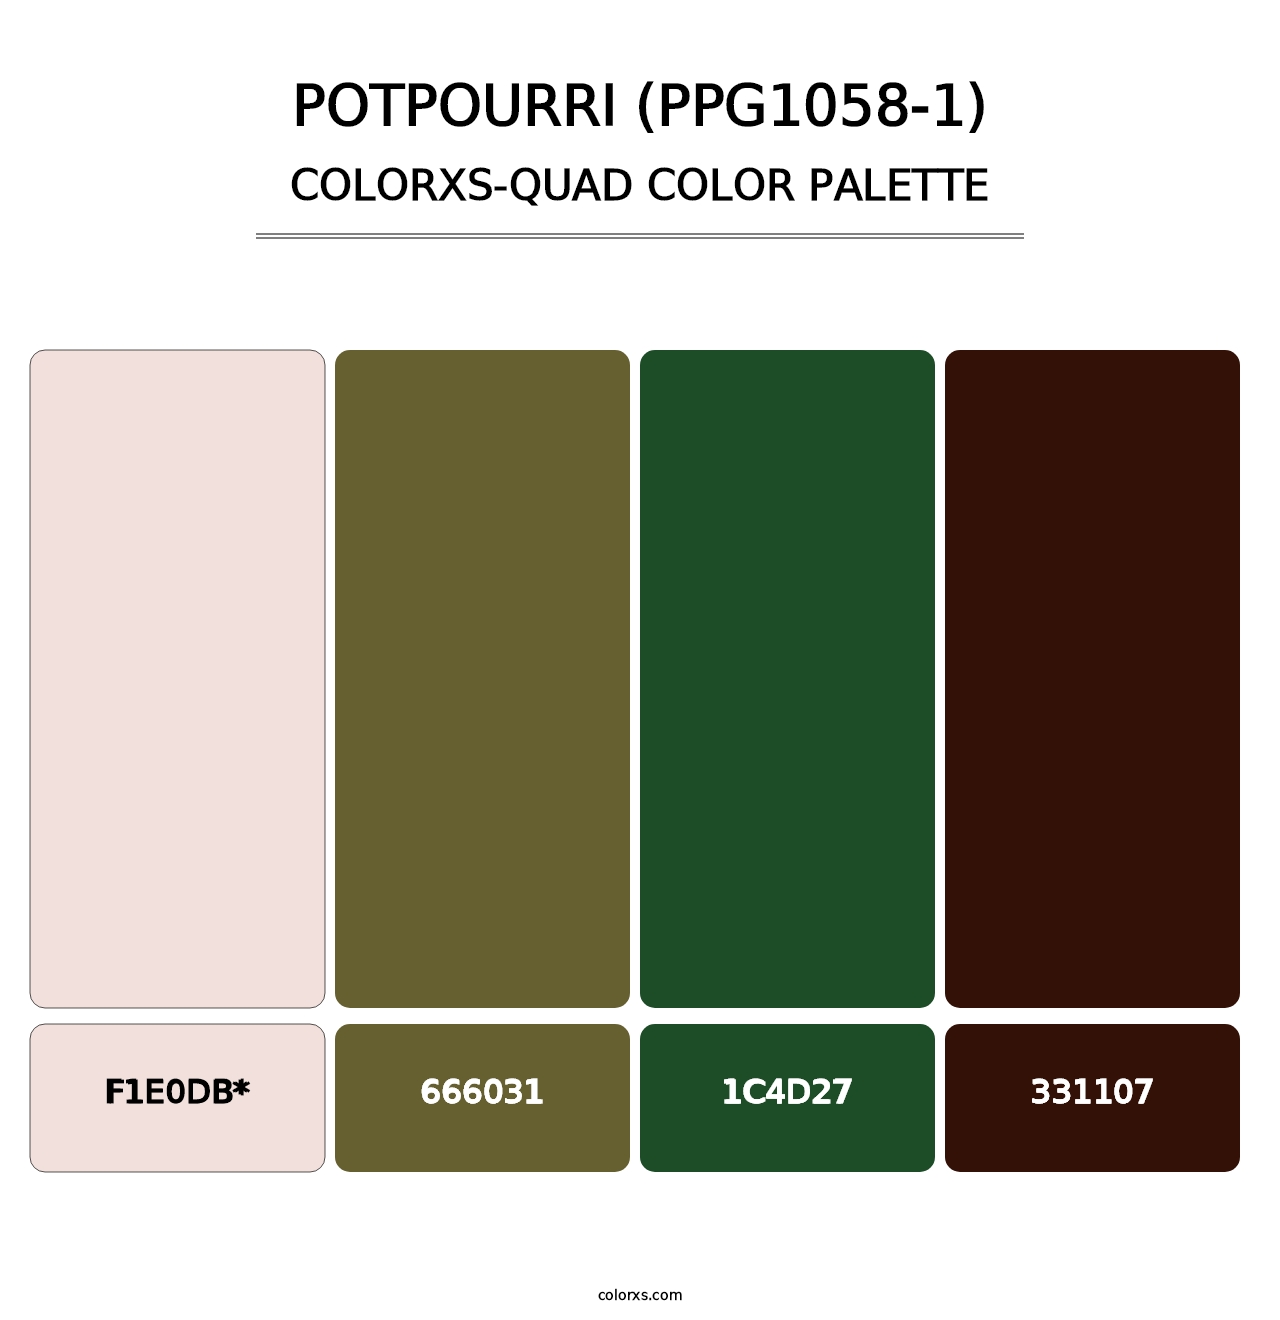 Potpourri (PPG1058-1) - Colorxs Quad Palette